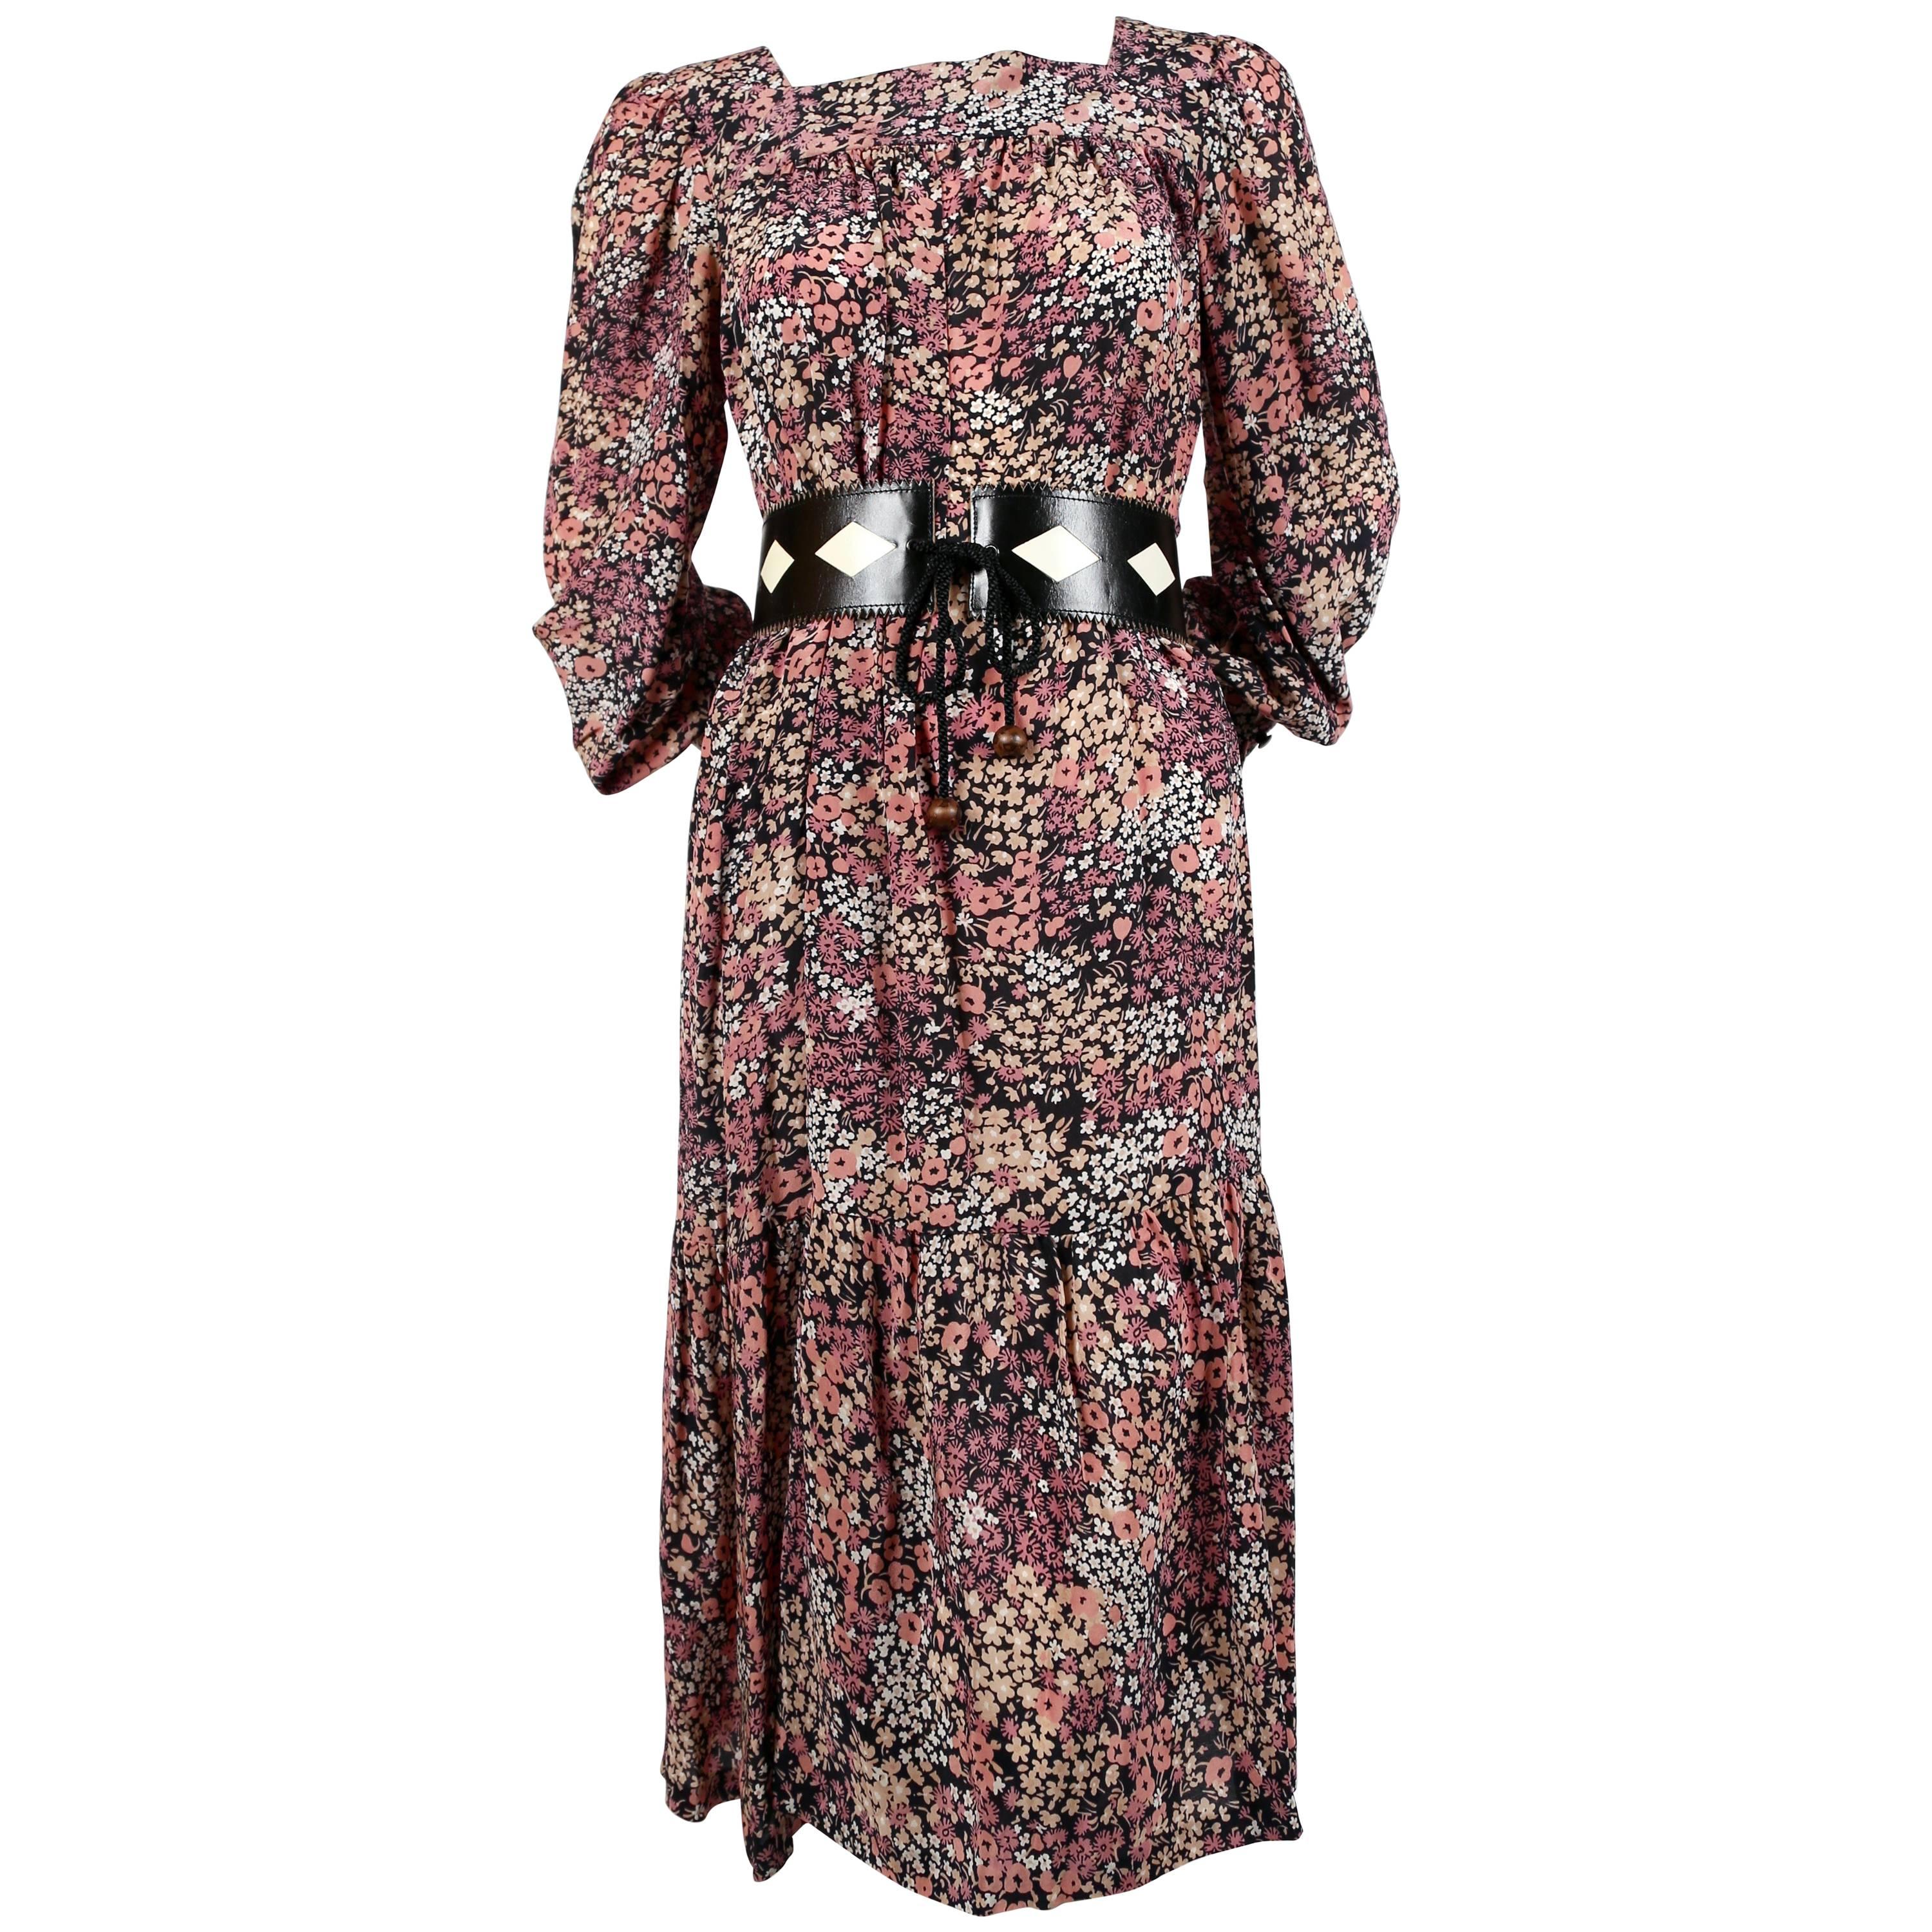 1970's SAINT LAURENT floral printed silk peasant dress